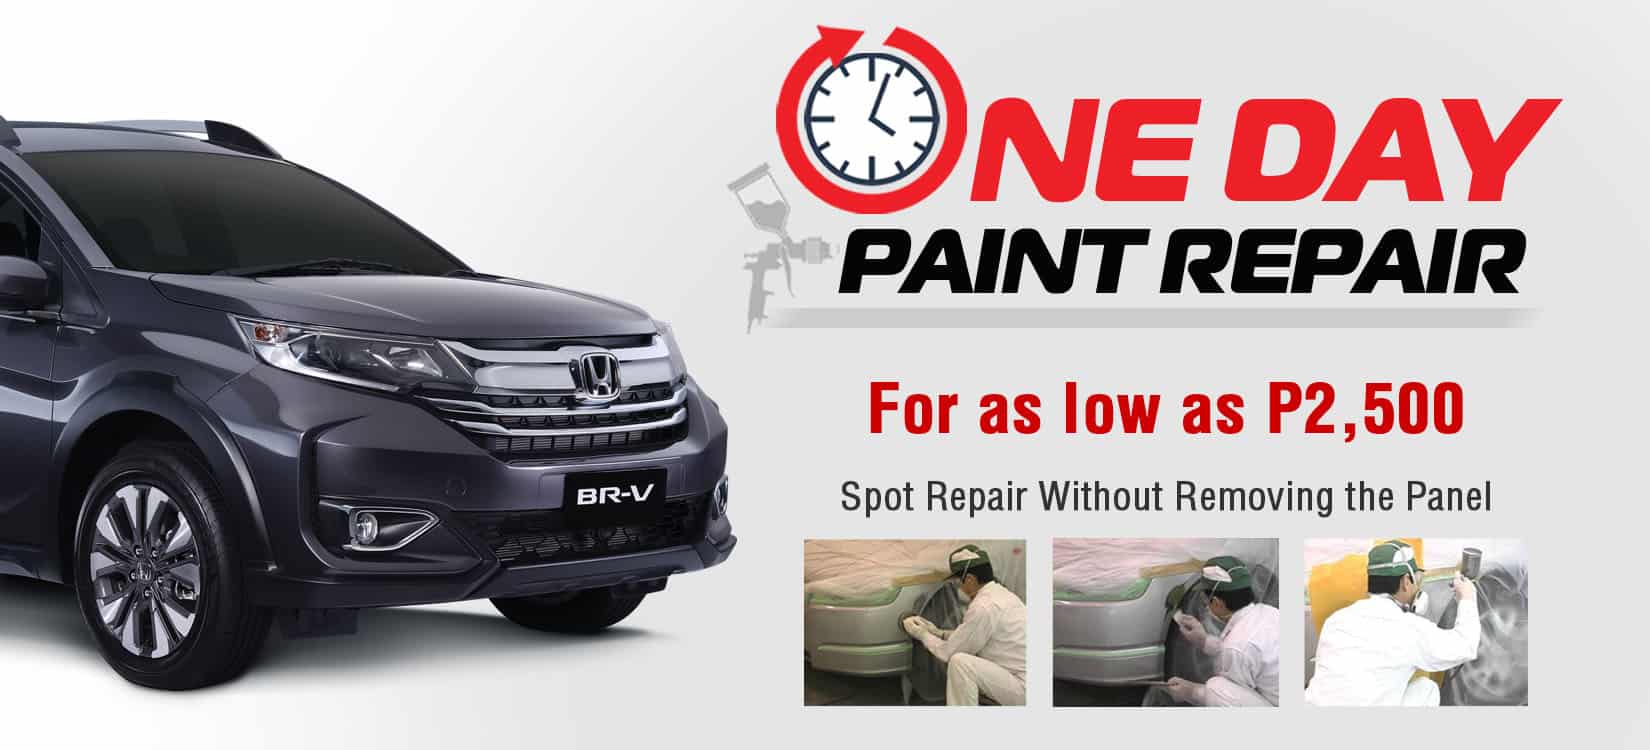 Honda launches One Day Paint Repair program